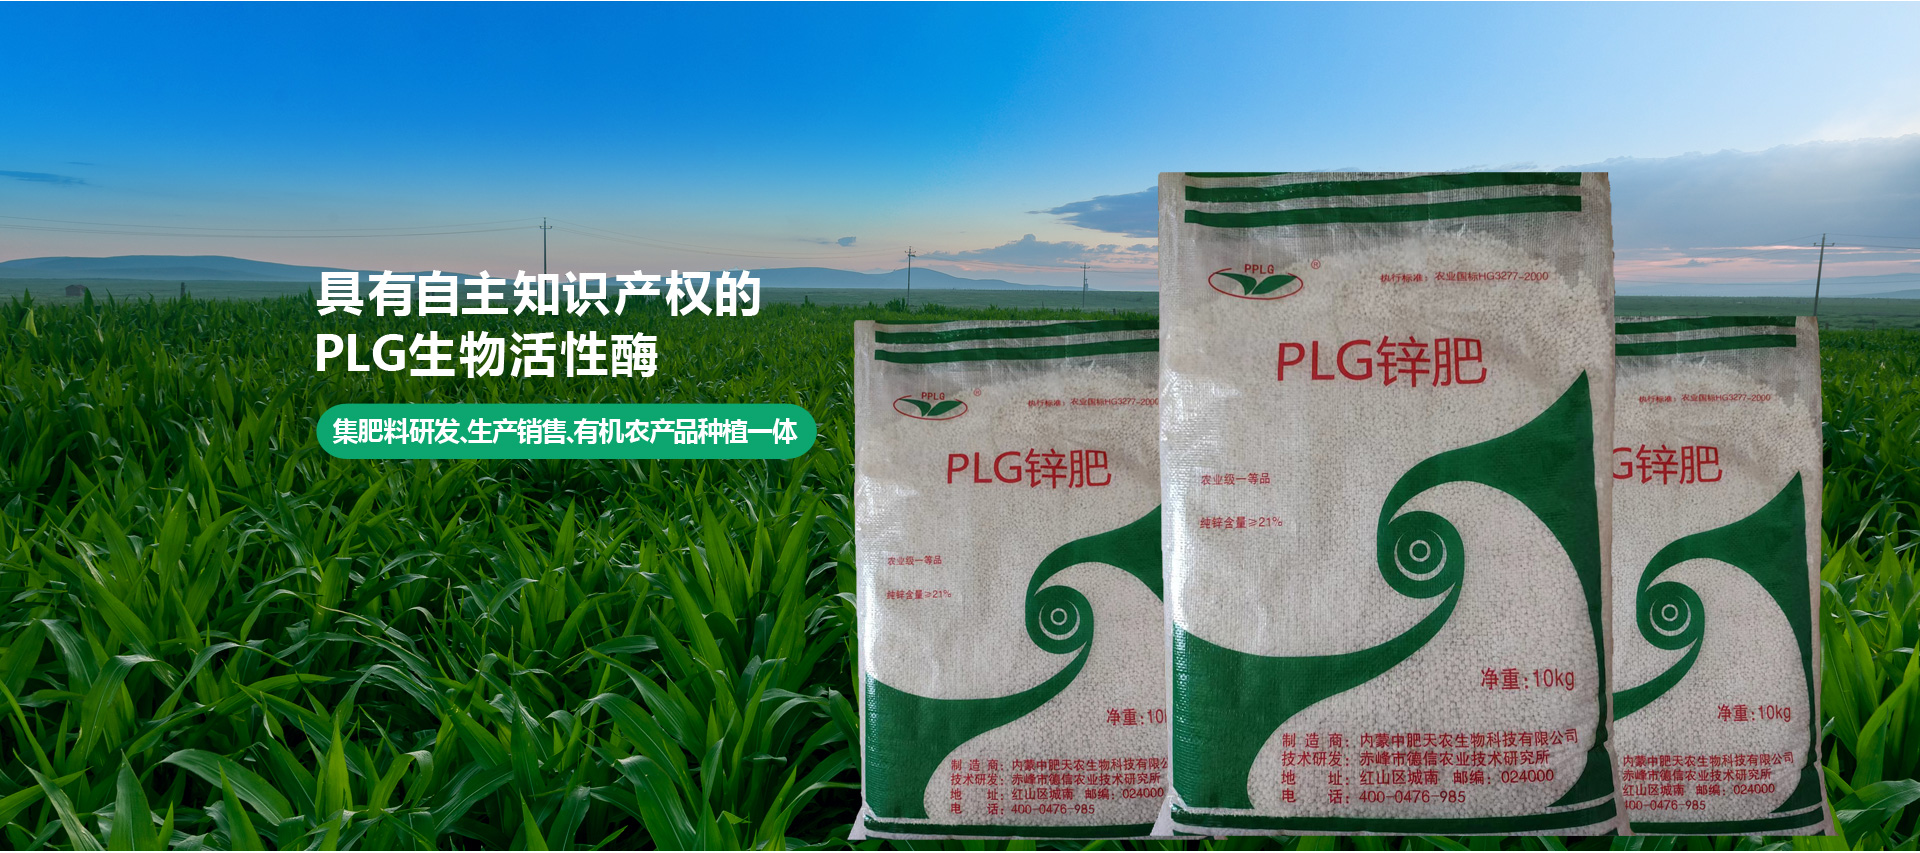 內蒙古中肥天農生物科技有限公司